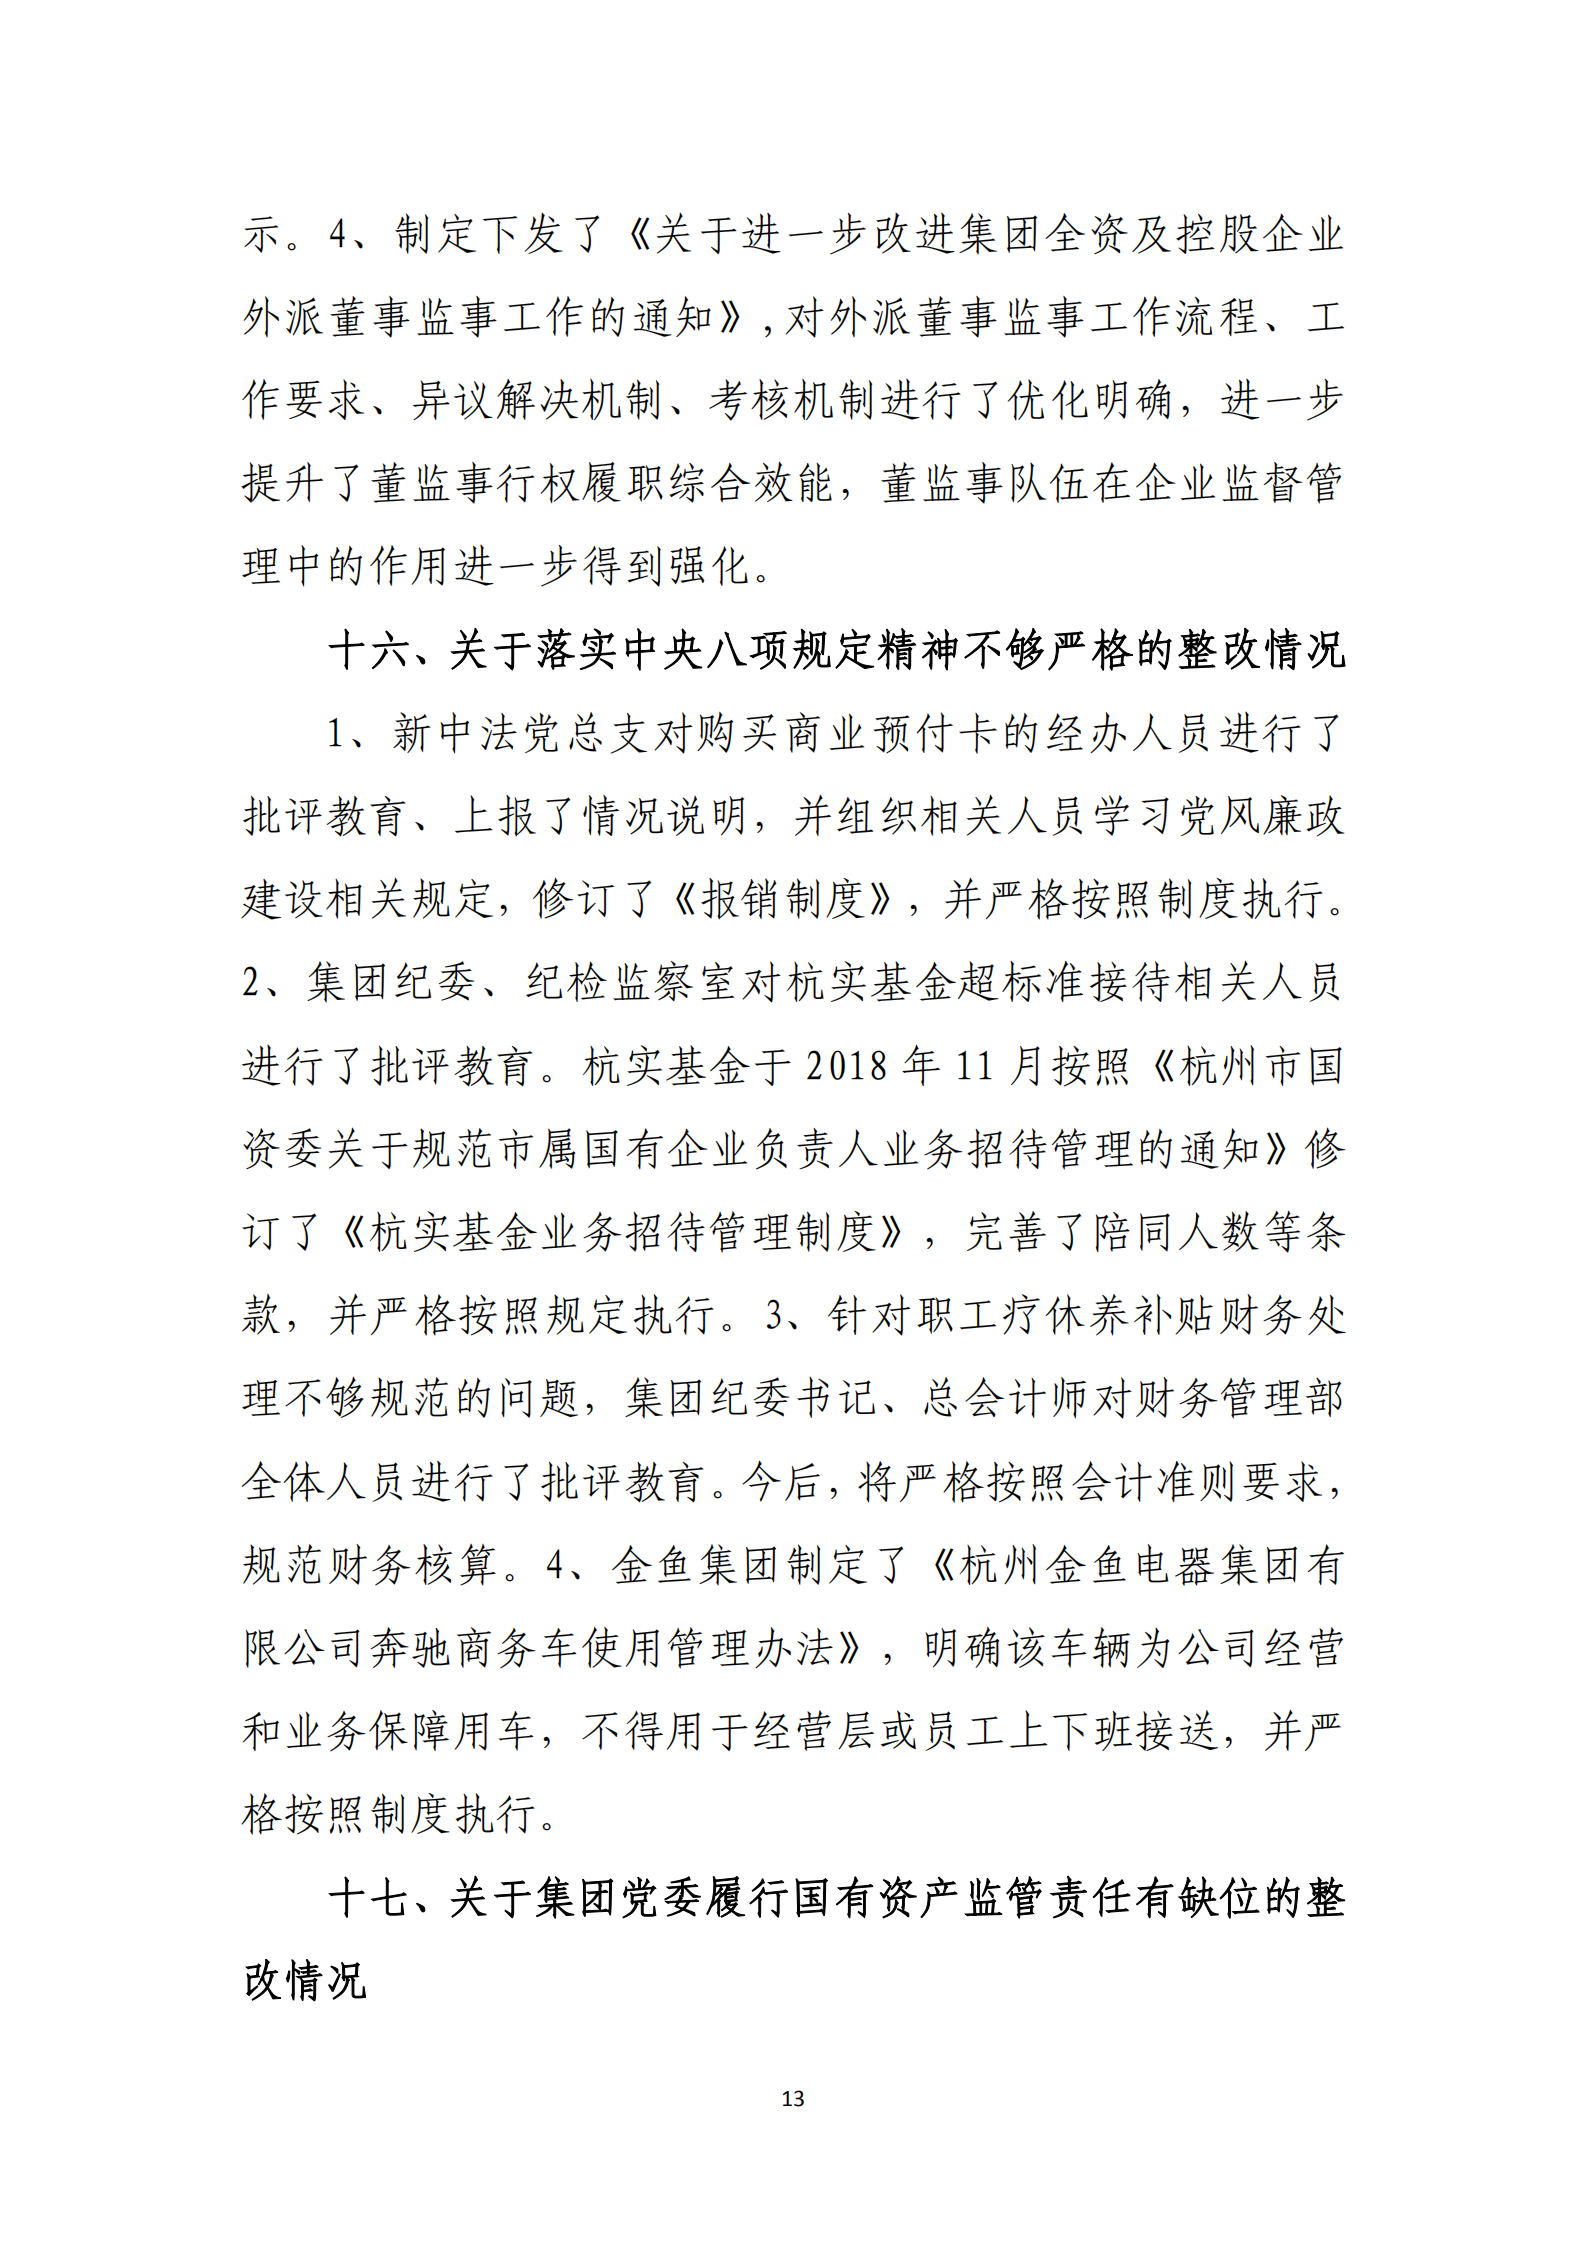 乐虎国际游戏官网党委关于巡察整改情况的通报_12.png